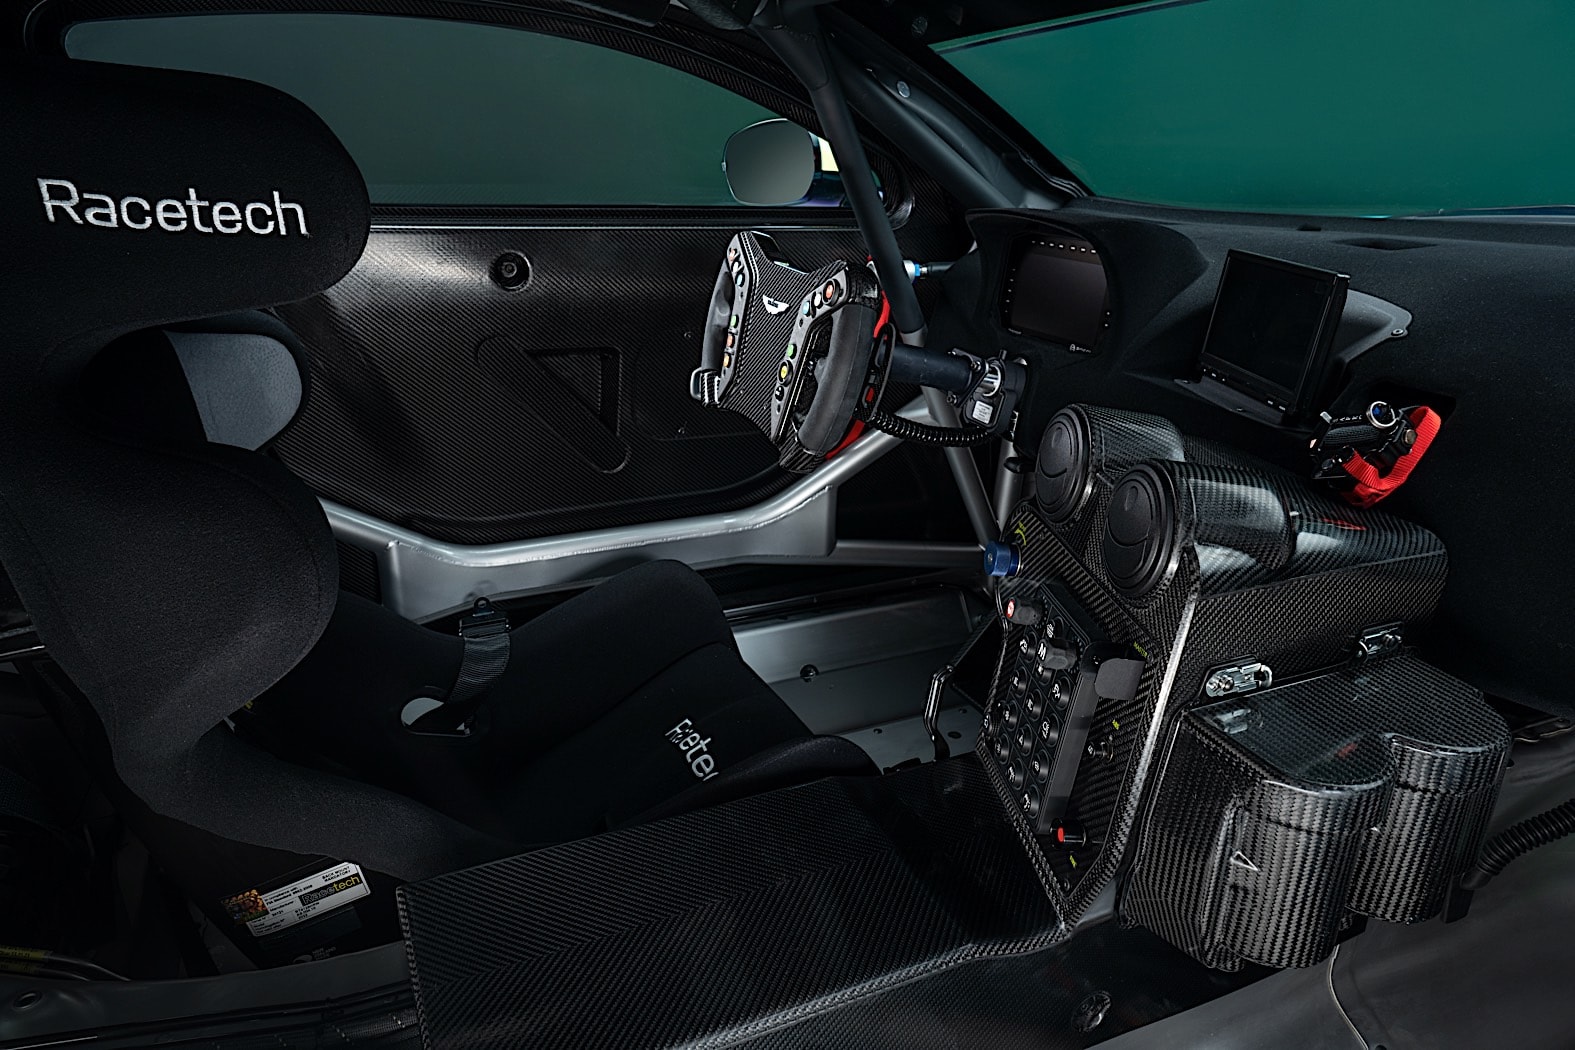 Новый Aston Martin Vantage GT4, гоночный автомобиль для юных профессионалов вождения